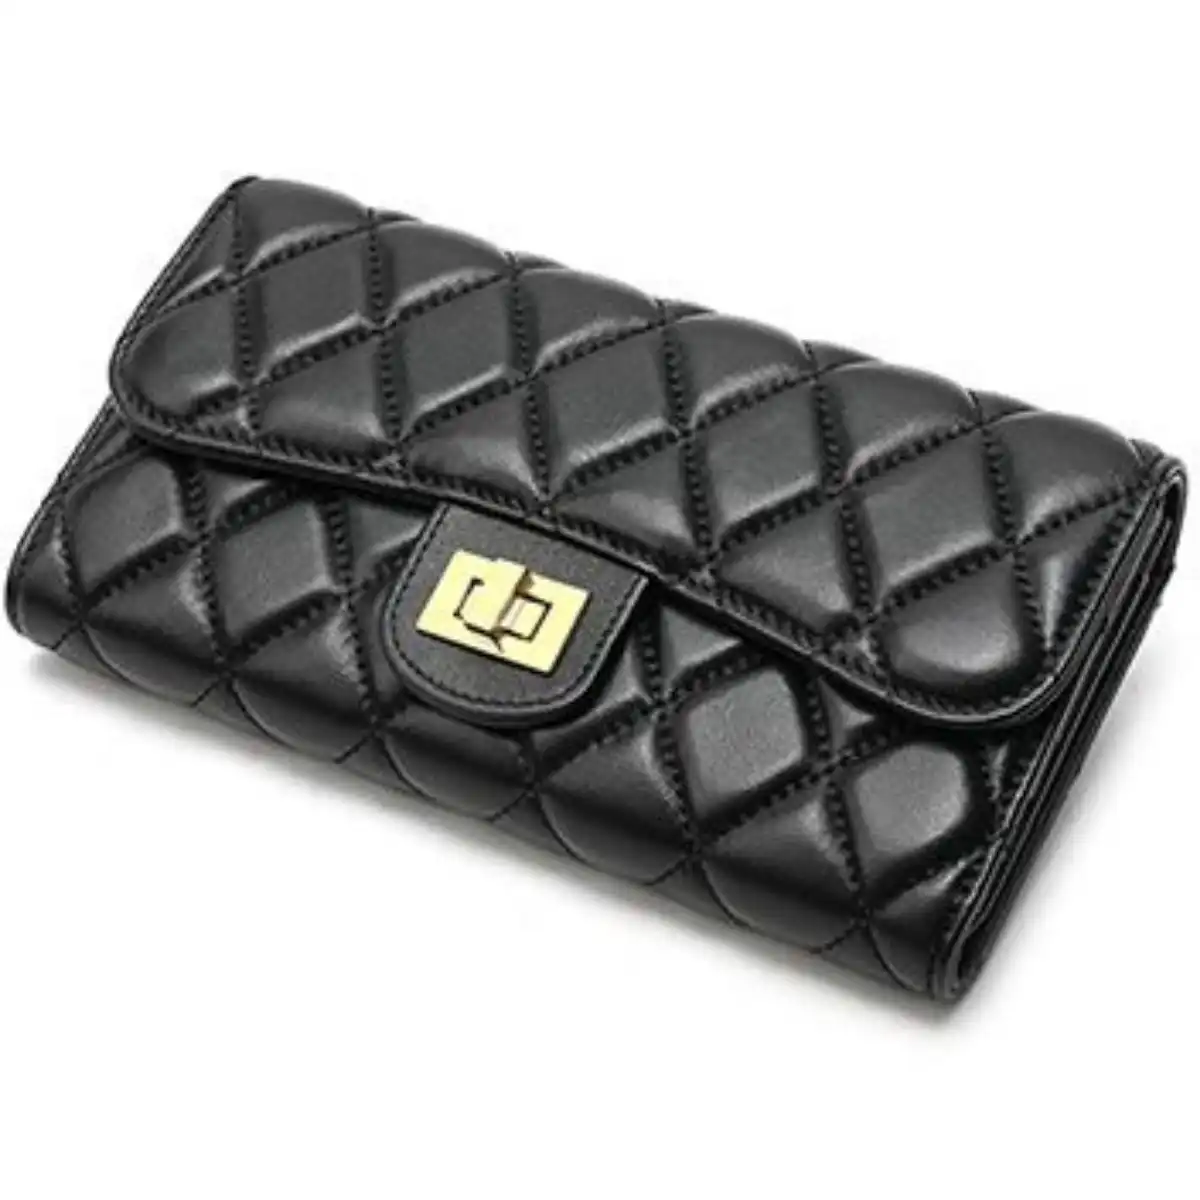 Chanel 2. 55 long flap wallet dupe baginc